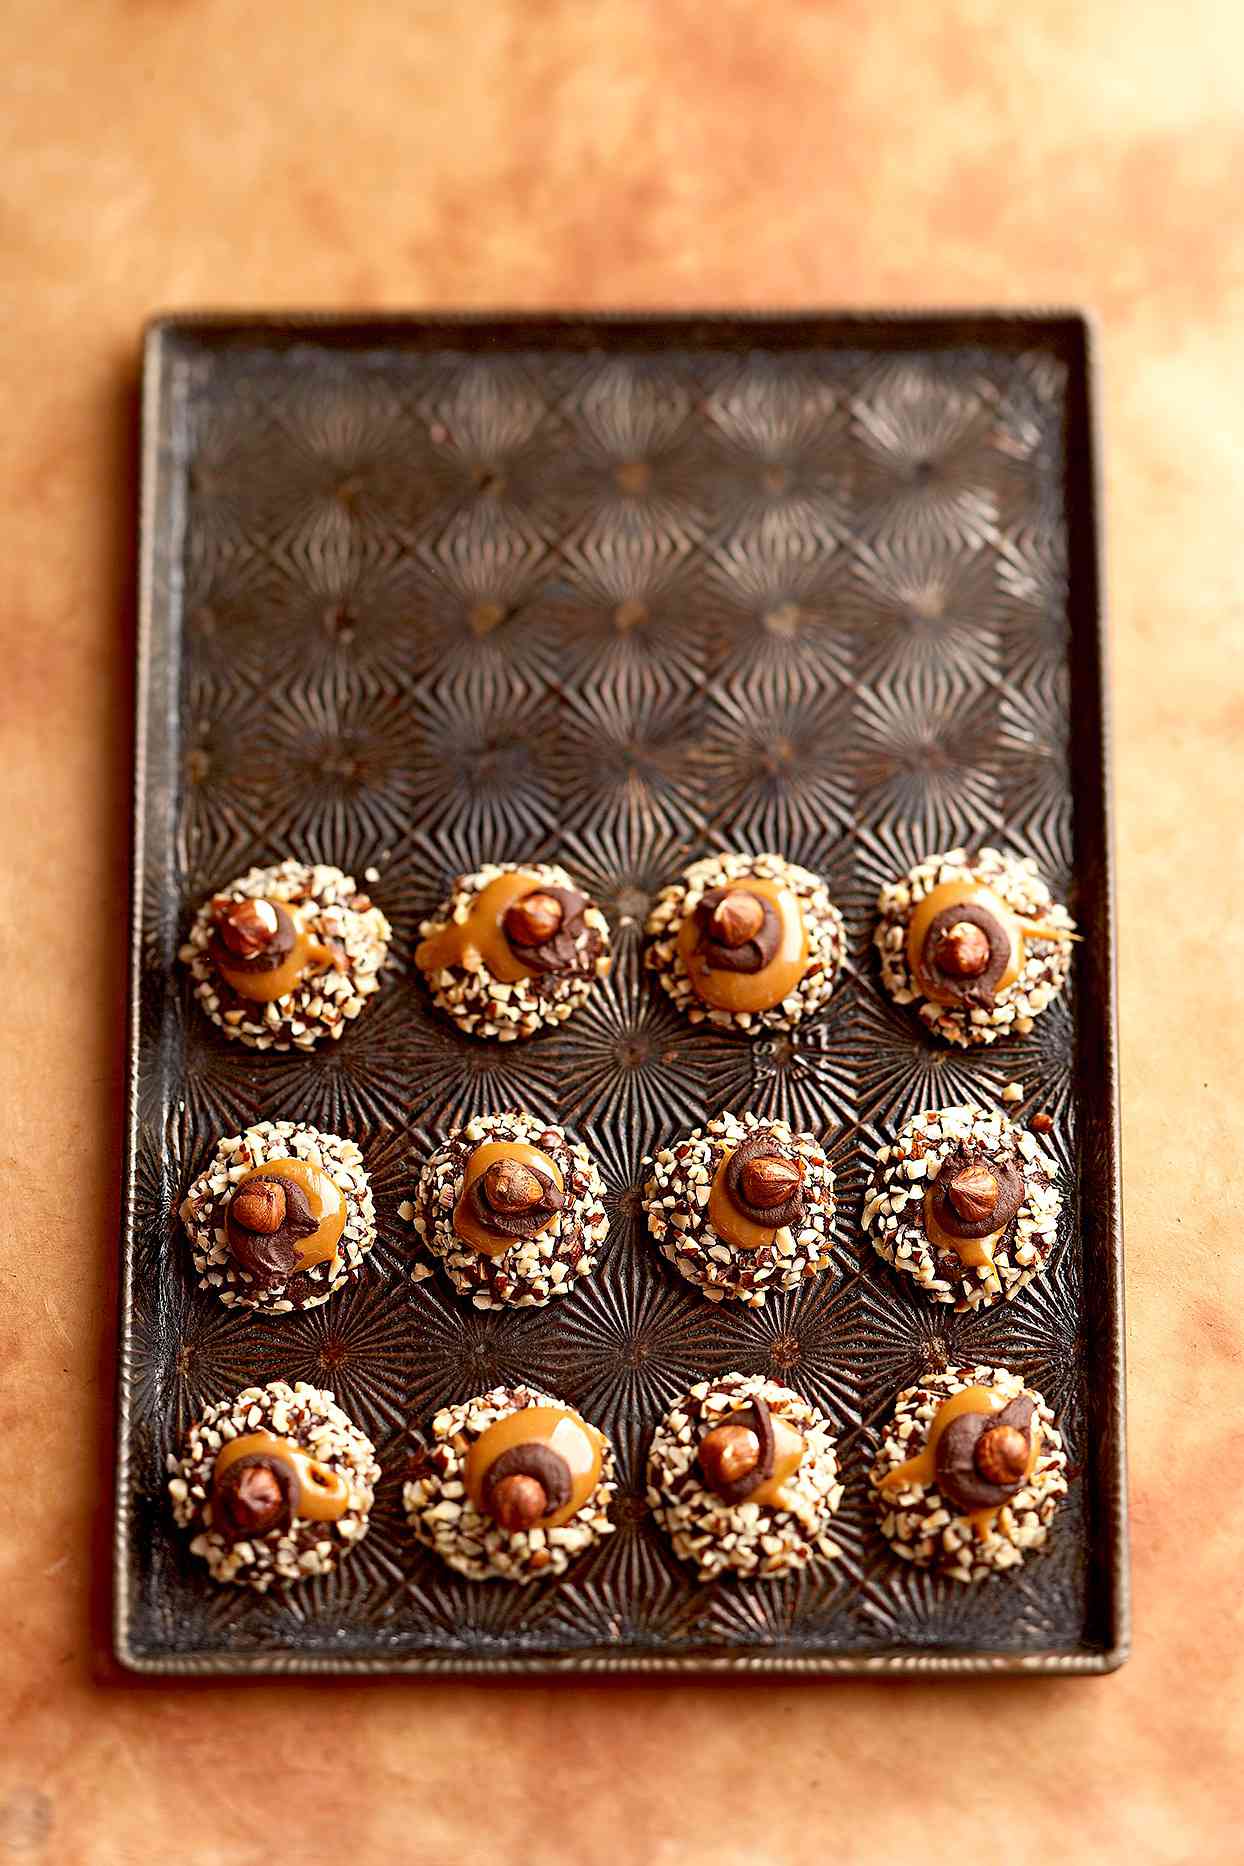 Chocolate, Hazelnut, and Caramel Thumbprint Cookies